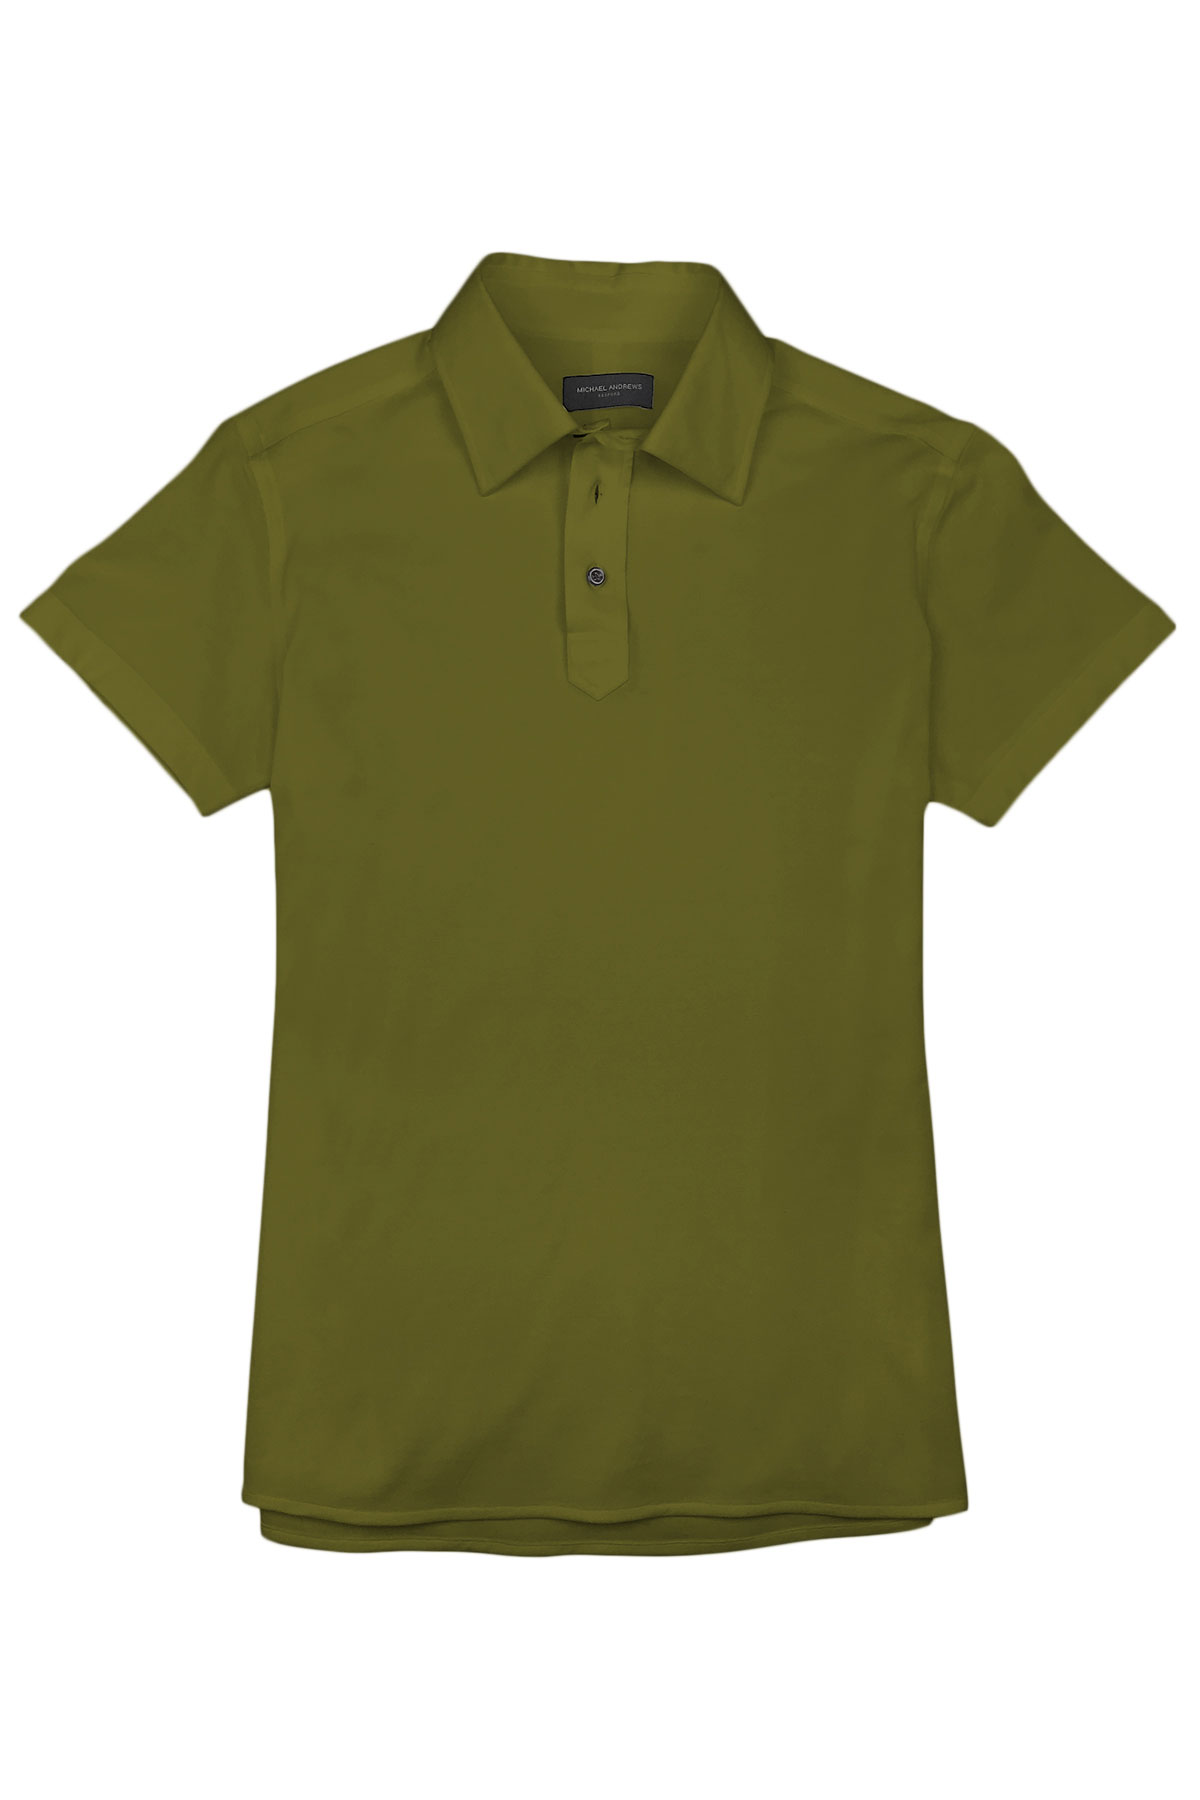 Army Green Pique Polo Shirt